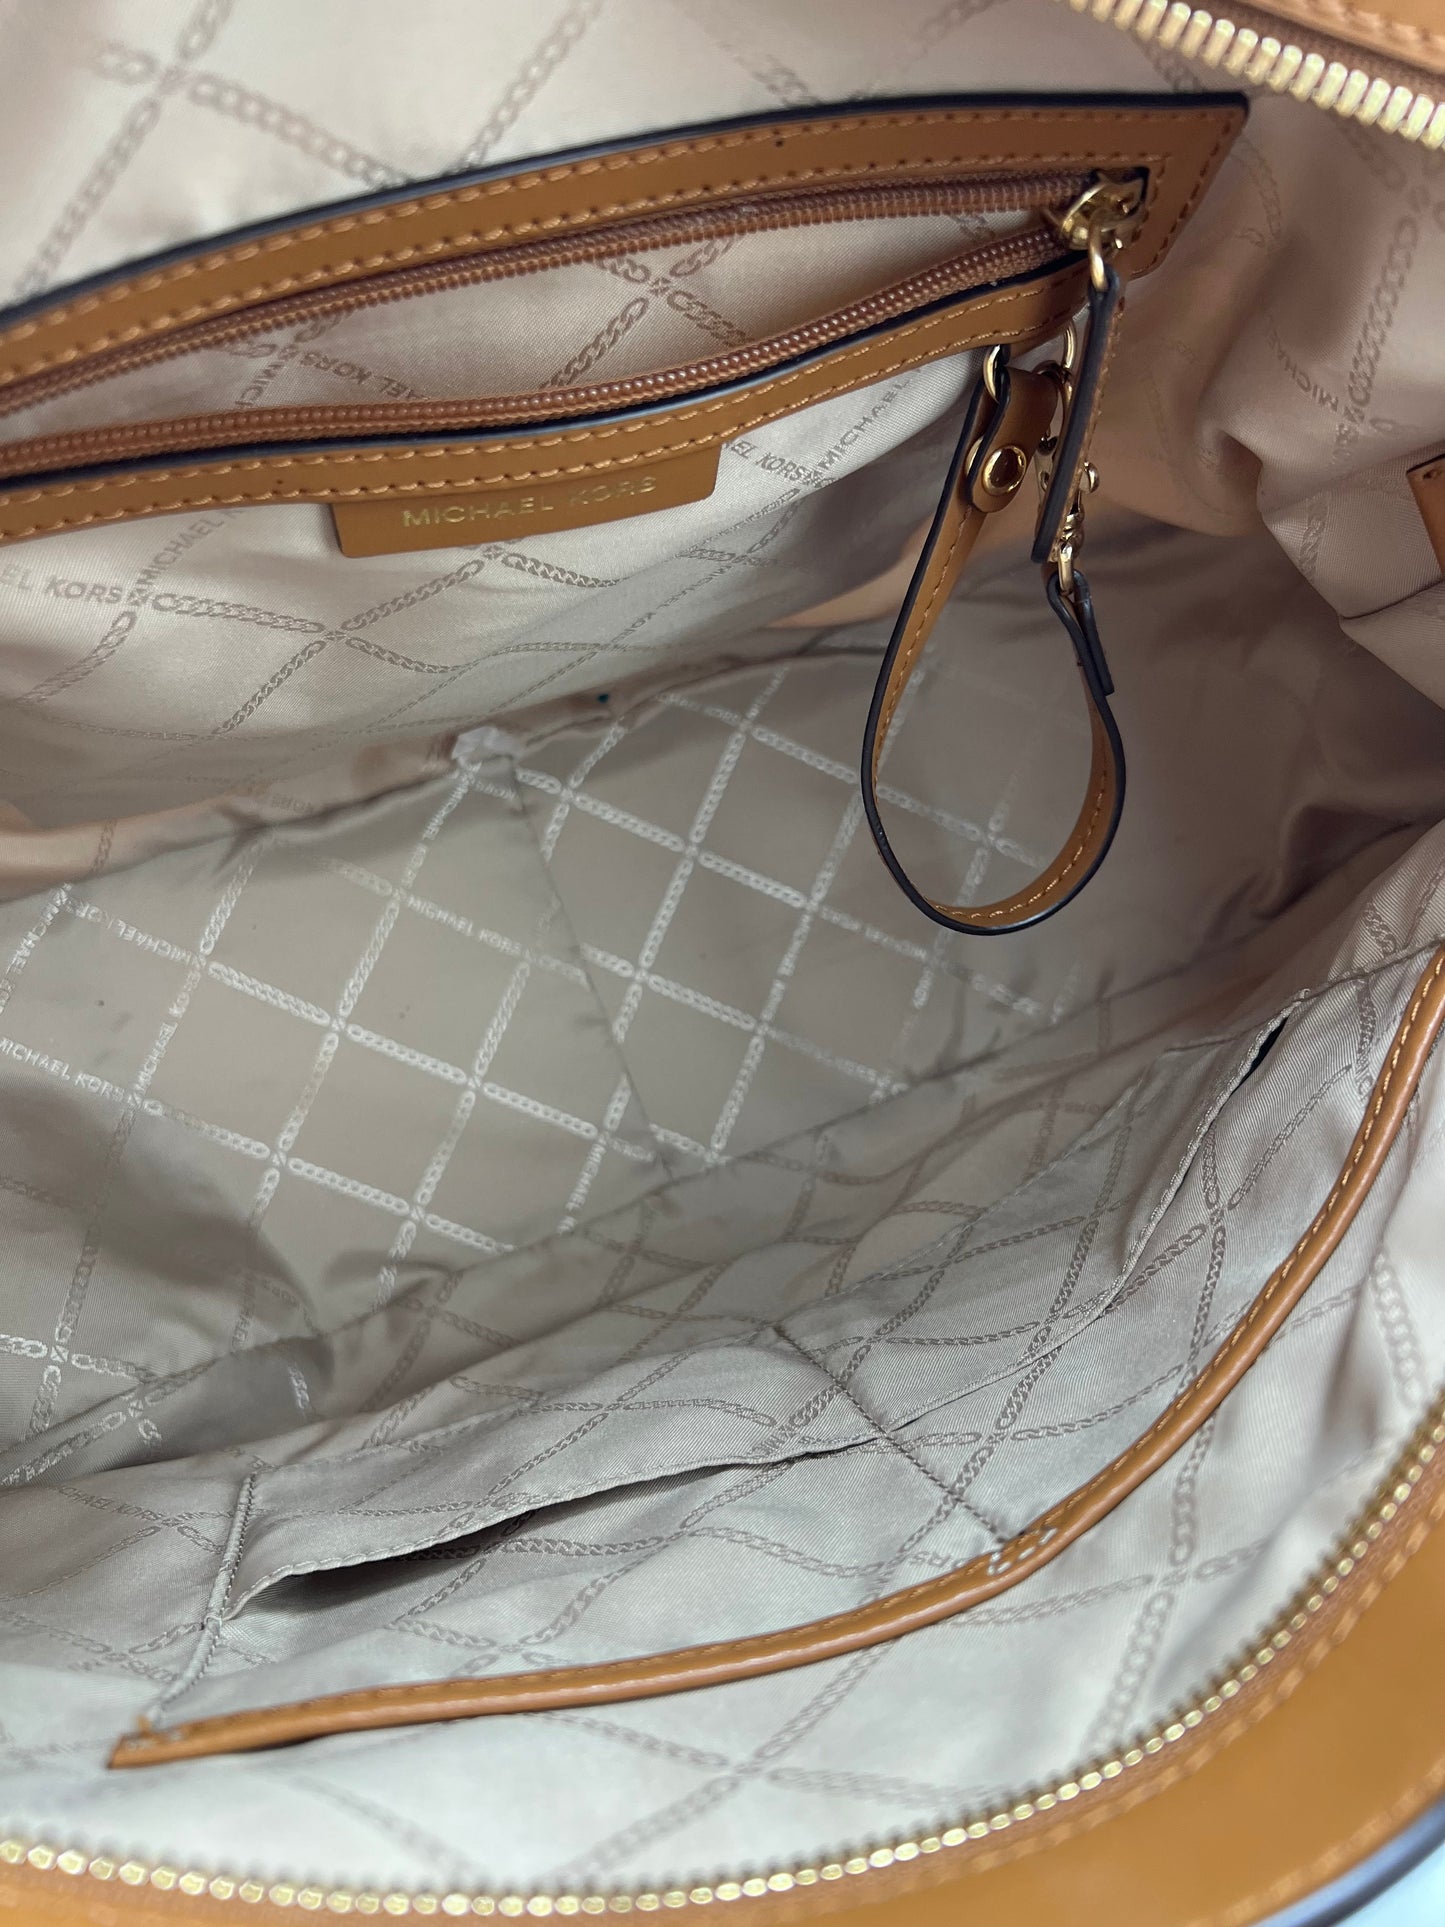 Like New! Handbag Designer By Michael Kors